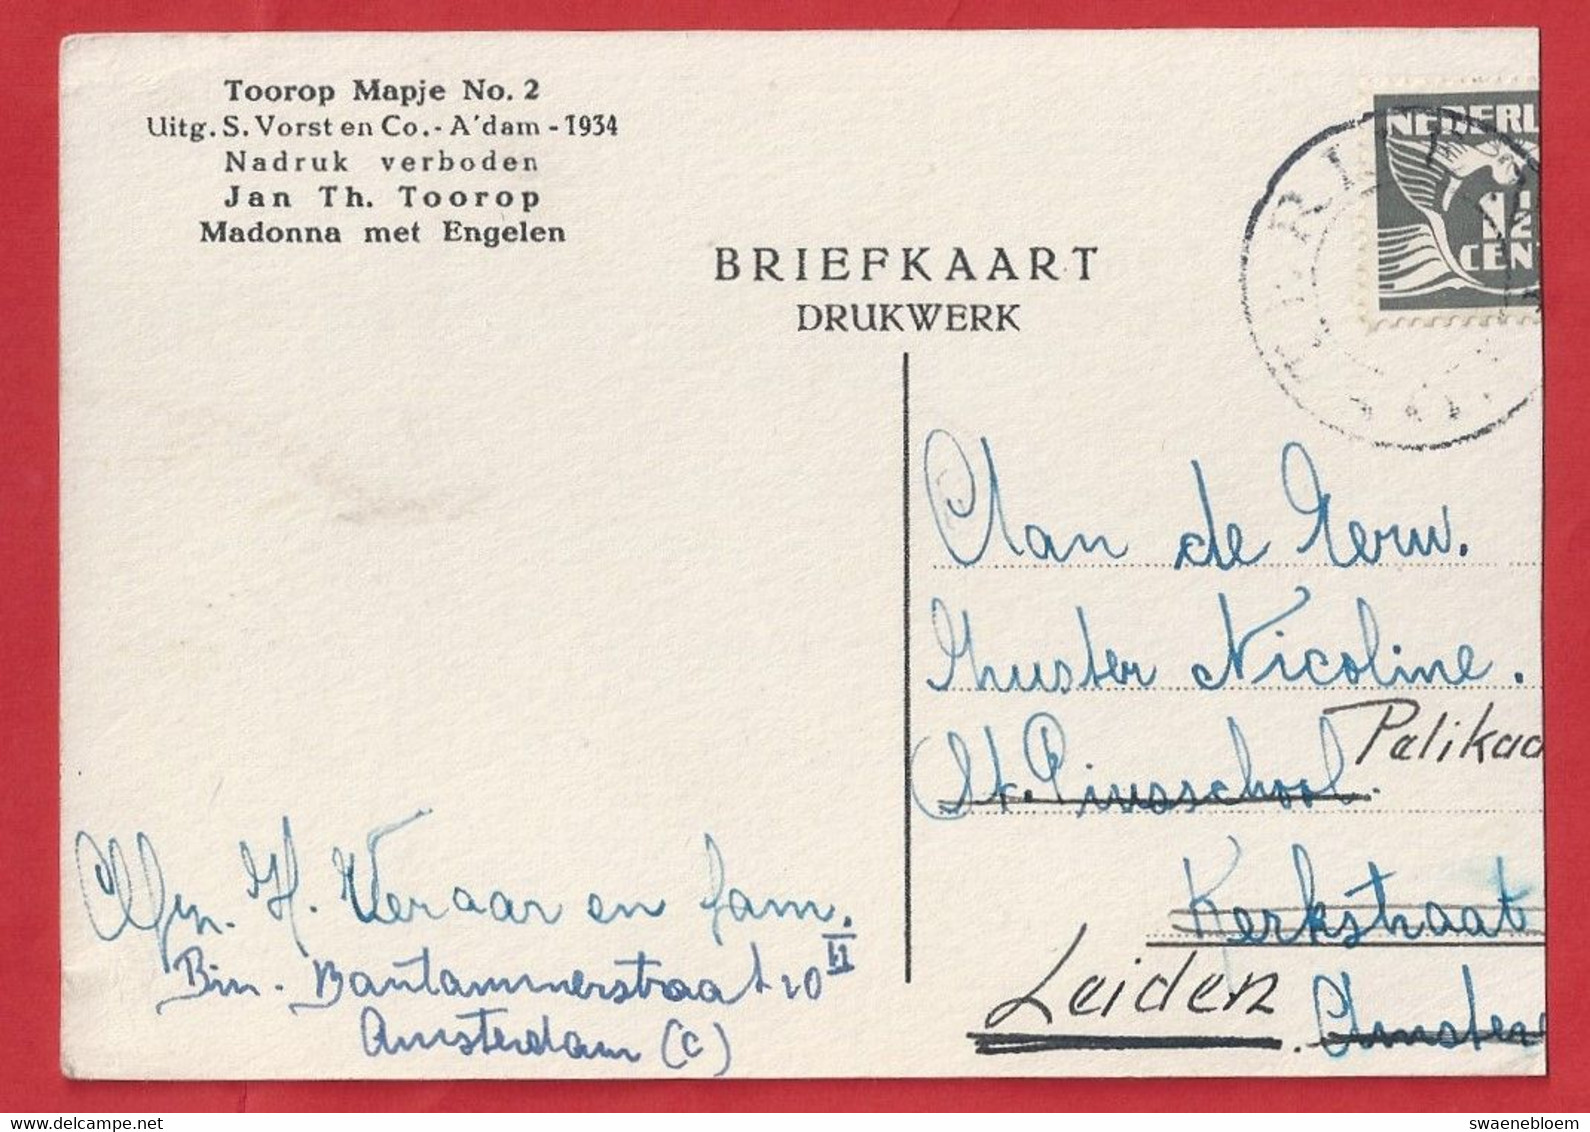 NL.- JAN TOOROP.  MADONNA MET ENGELEN. Uitg. S. Vorst En Co, Amsterdam. 1934. J. Th. Toorop. - Toorop, Jan